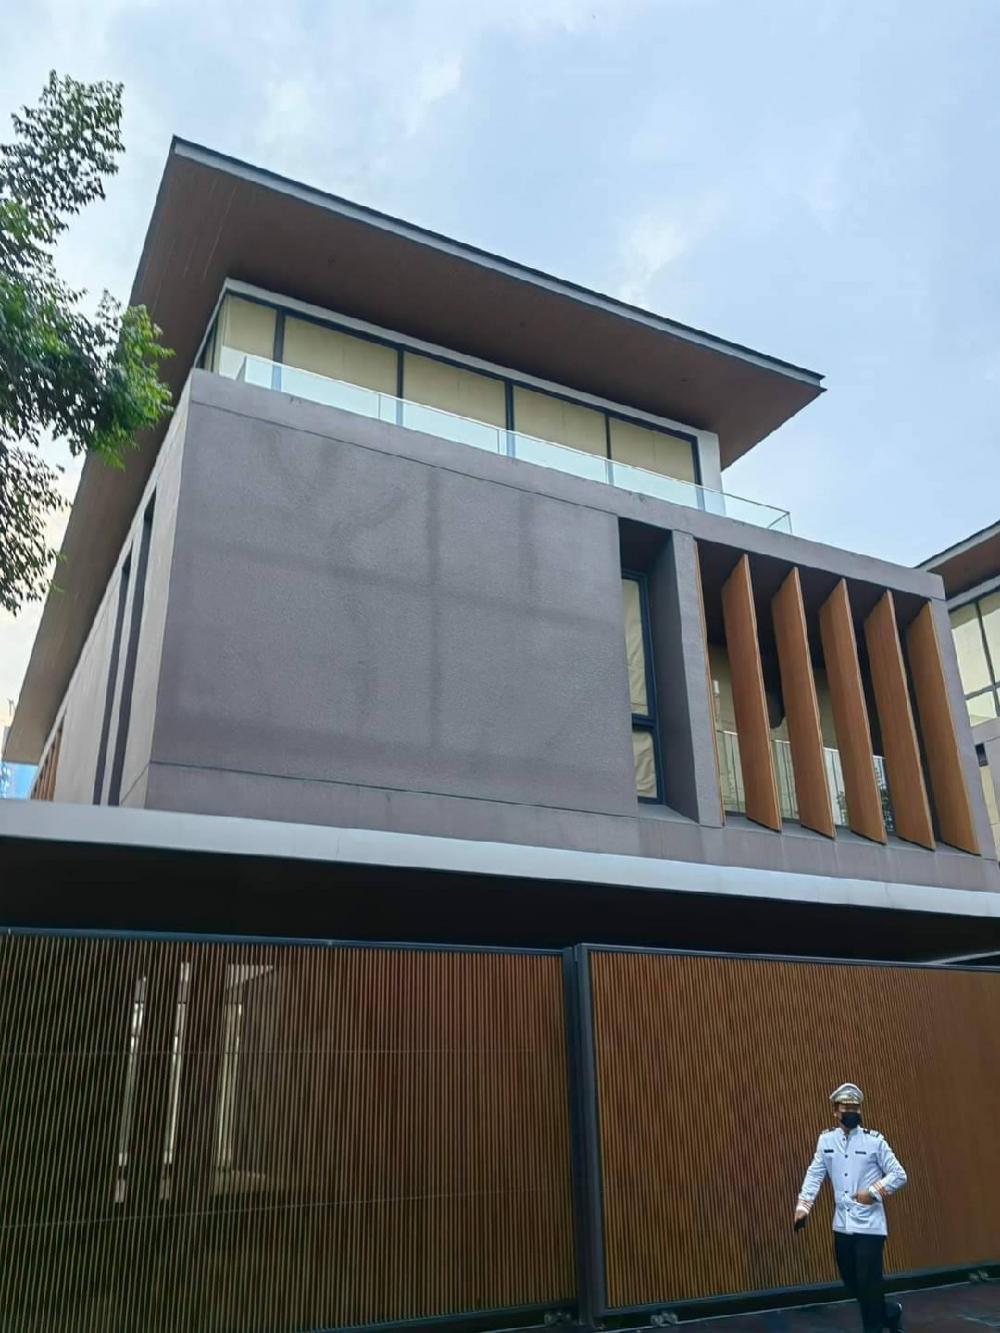 ขายบ้านพระราม 9 เพชรบุรีตัดใหม่ RCA : ขายบ้านหรูโครงการ​ (อิสสระ เรสซิเดนซ์ พระราม 9) Issara Residence Rama 9